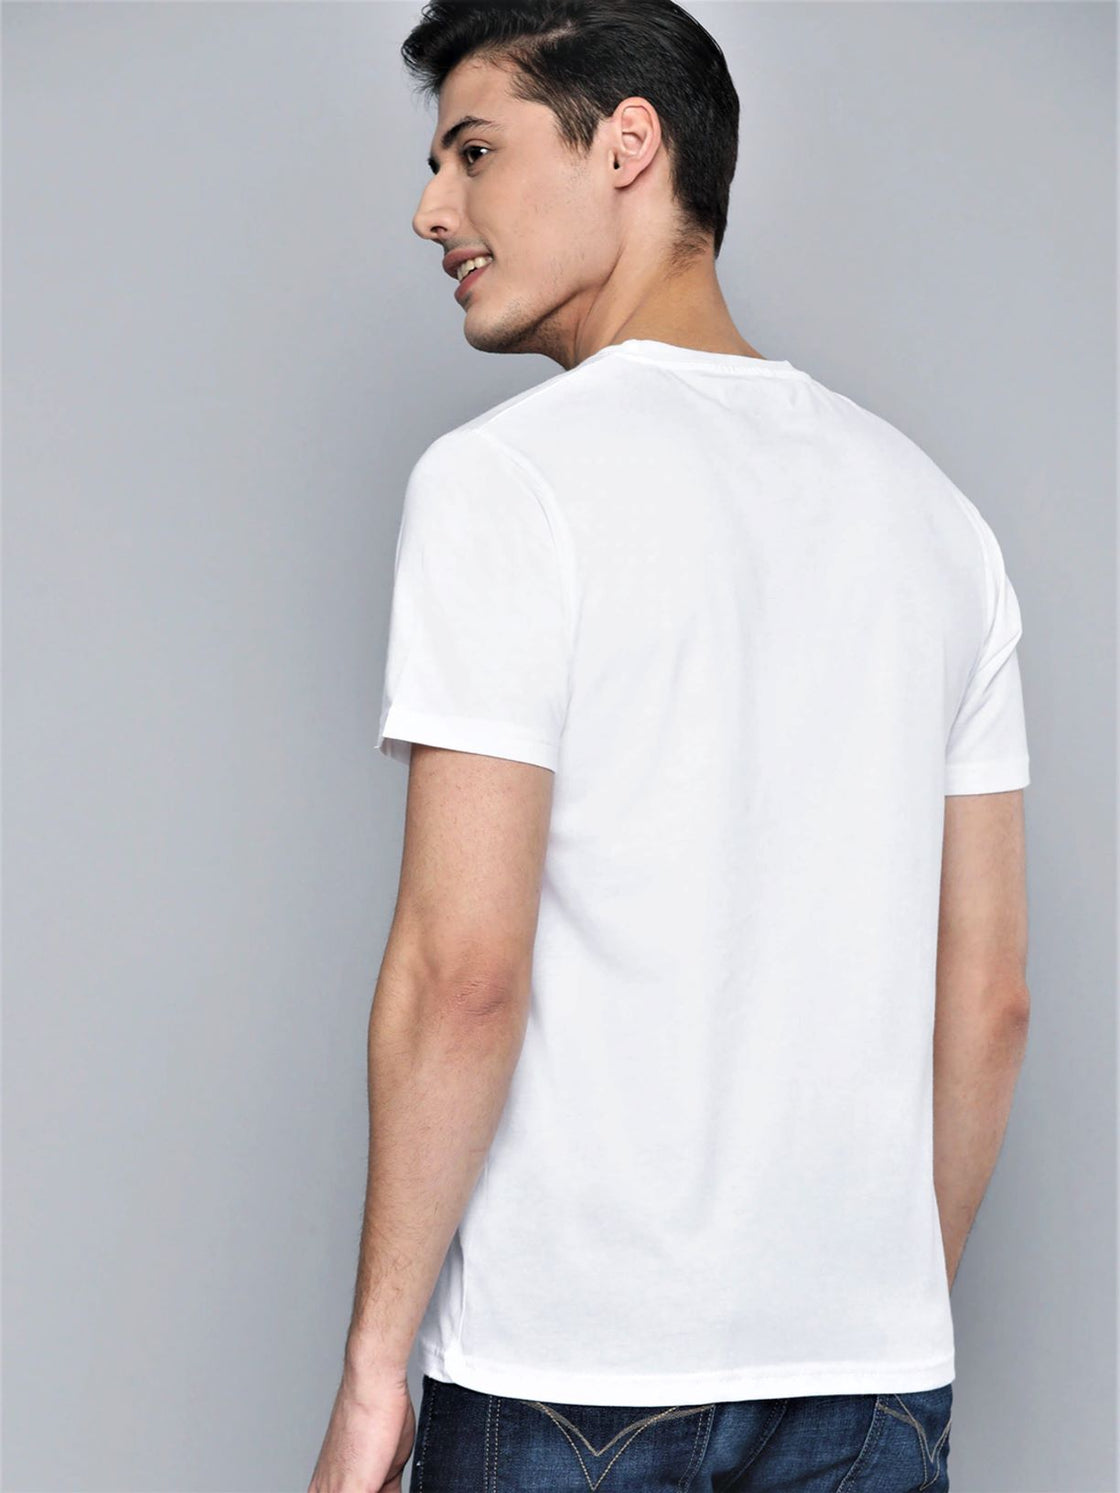 Men’s Sports Wear Round White Neck T-Shirt